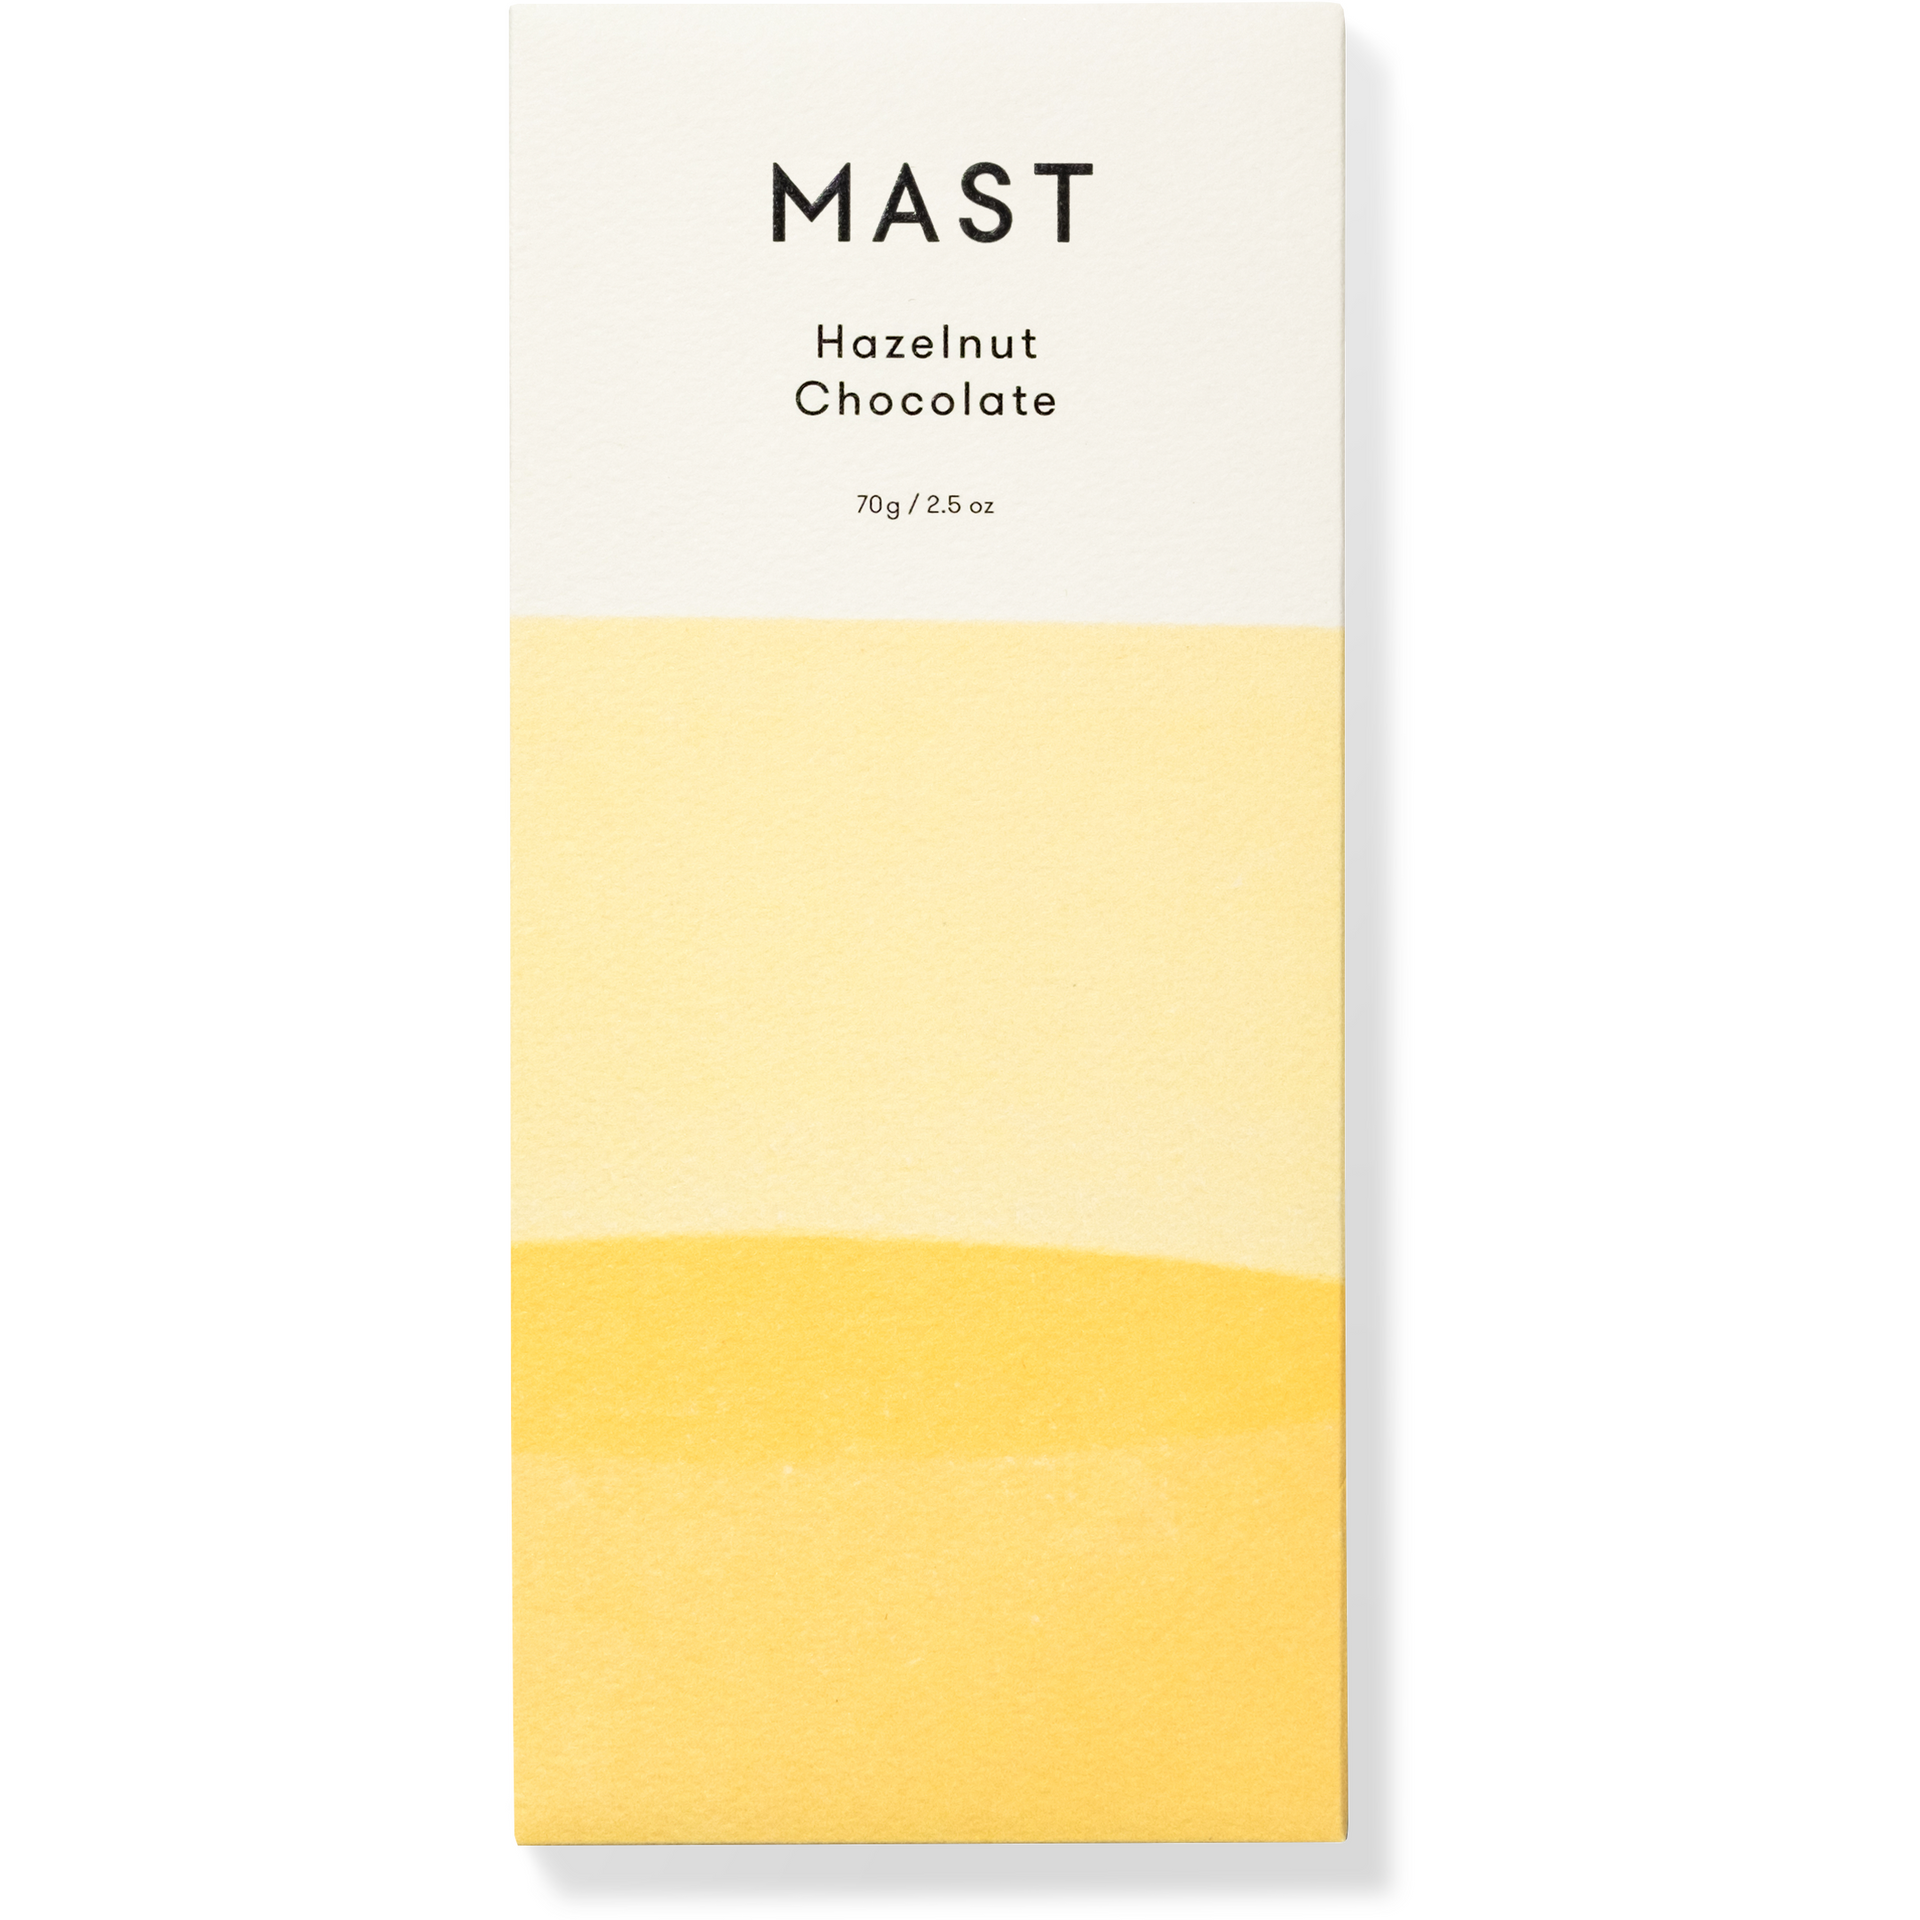 Hazelnut Chocolate - Classic (70g / 2.5oz)  Mast   